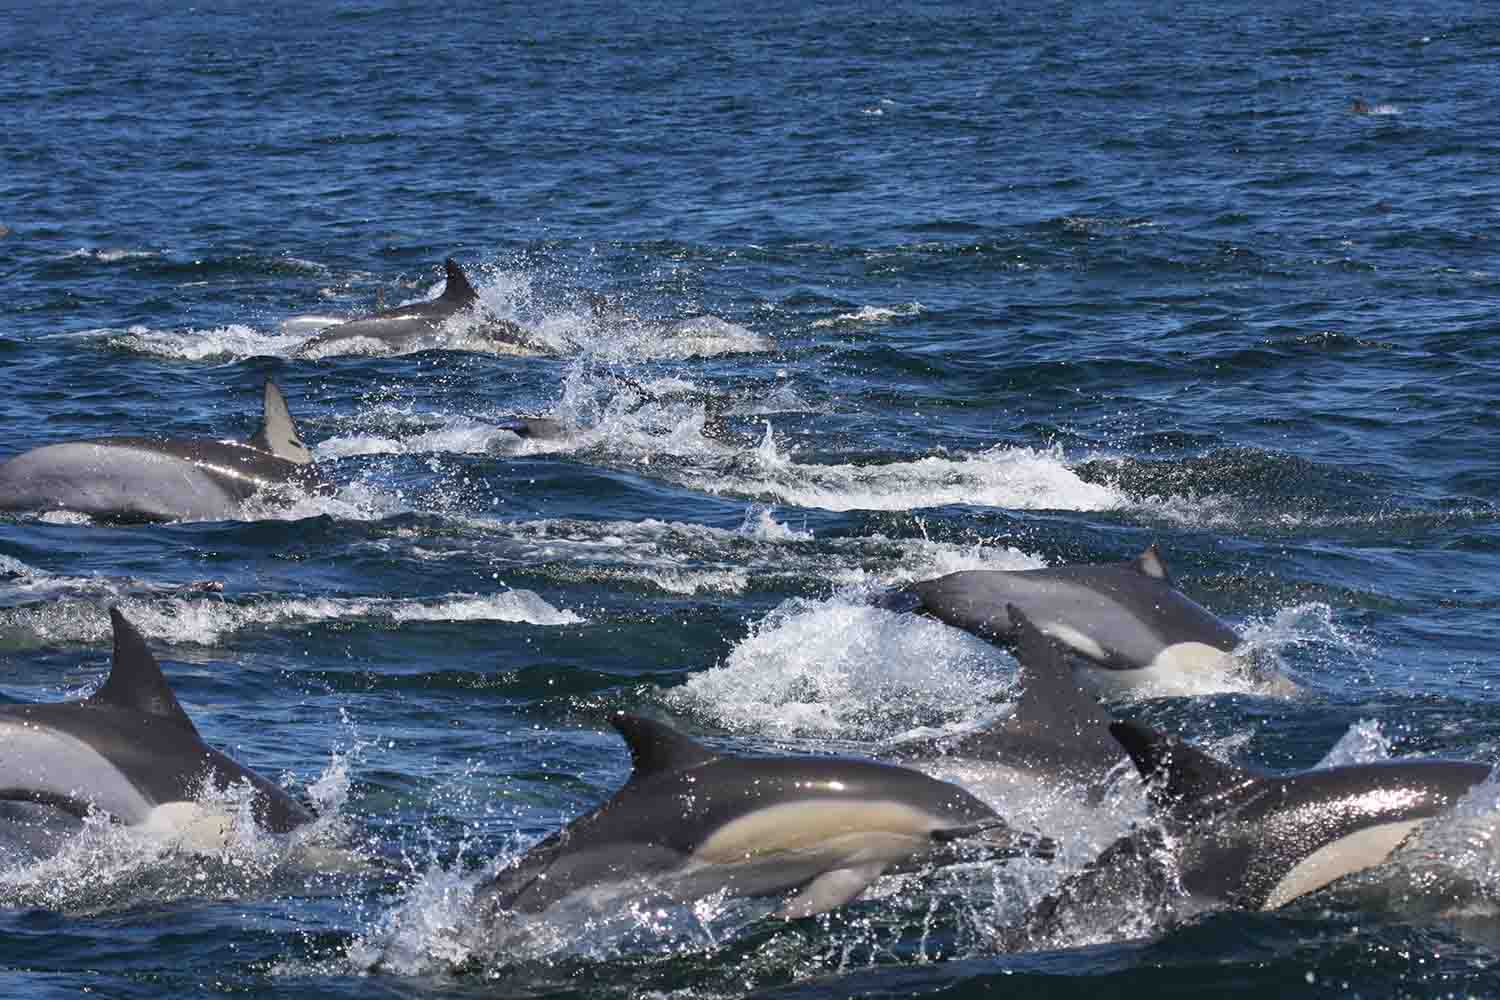 Delfines comunes en el Océano Índico. Imagen: Stephanie Plön / CSIC